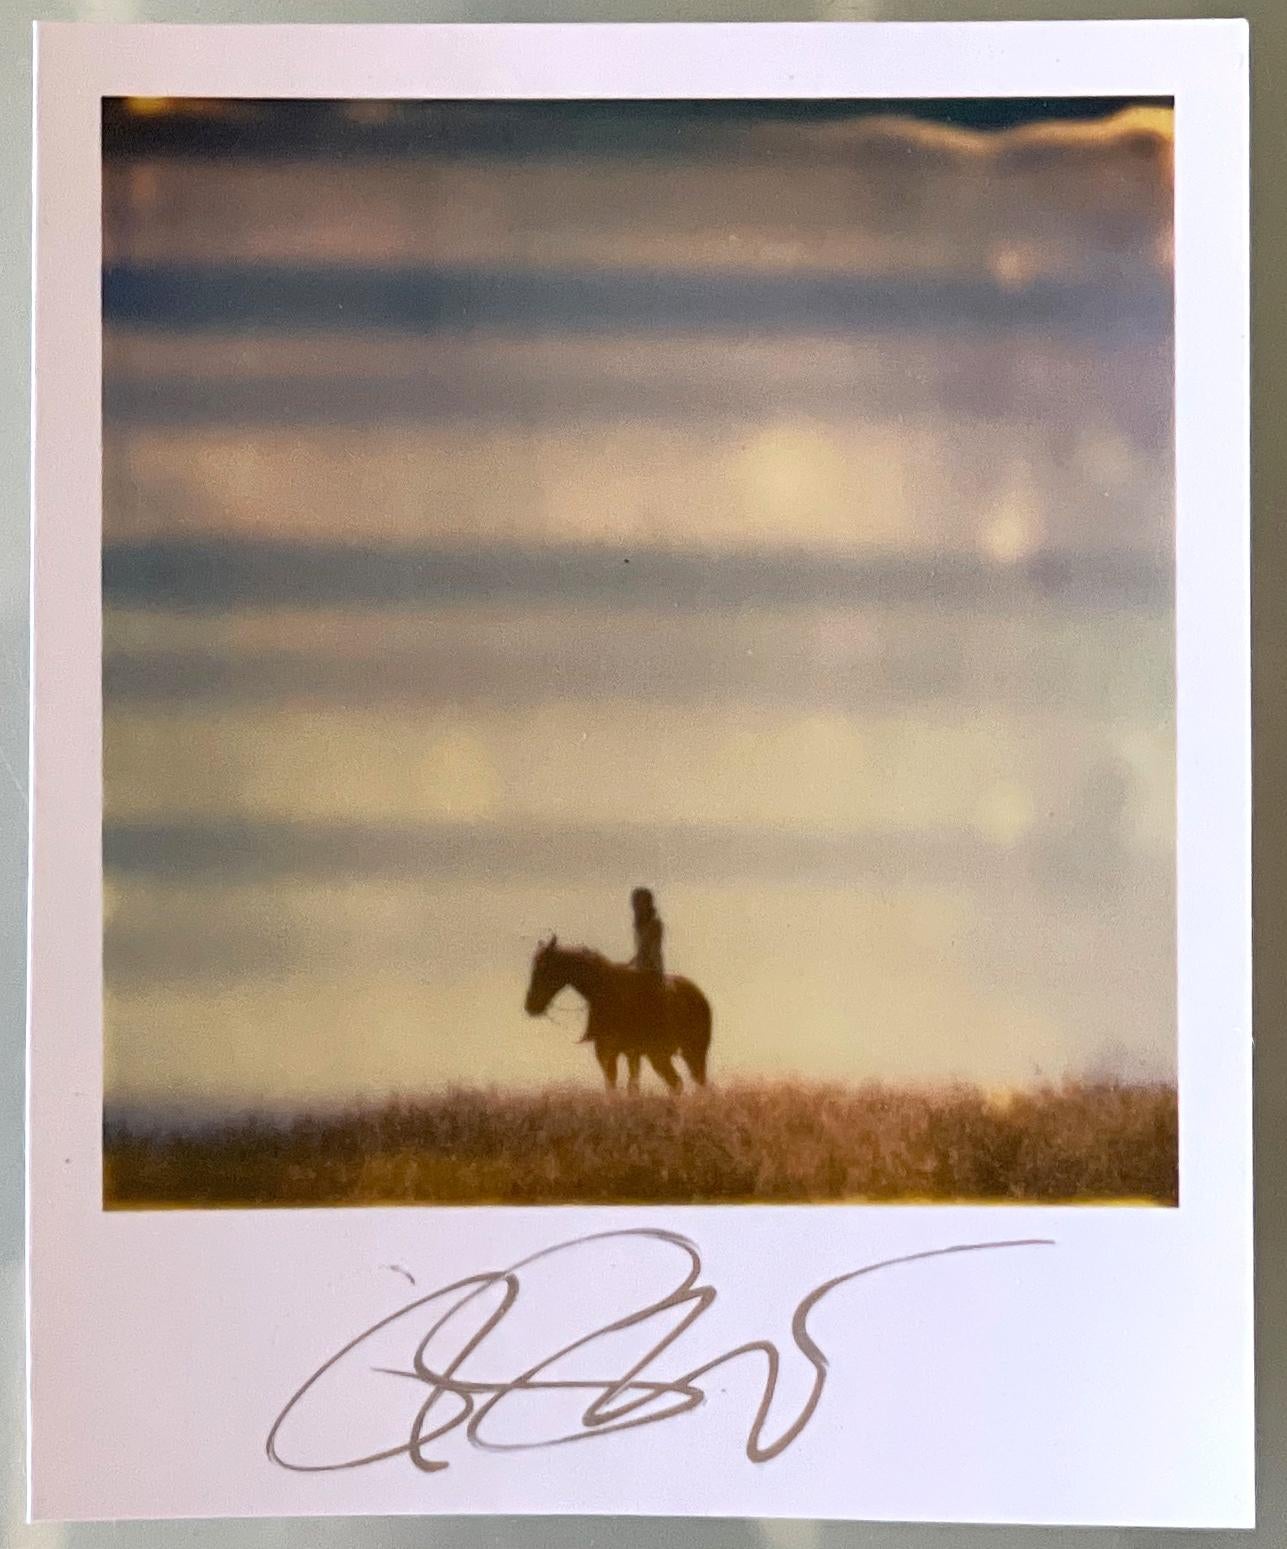 Stefanie Schneiders Mini
Renée's Dream XI (Tage des Himmels) - 2006

vorne signiert, nicht montiert.
Digitale Farbfotografien auf der Grundlage eines Polaroids.

Offene Editionen in Polaroidgröße 1999-2023
10,7 x 8,8cm (Bild 7,9x7,7cm)
